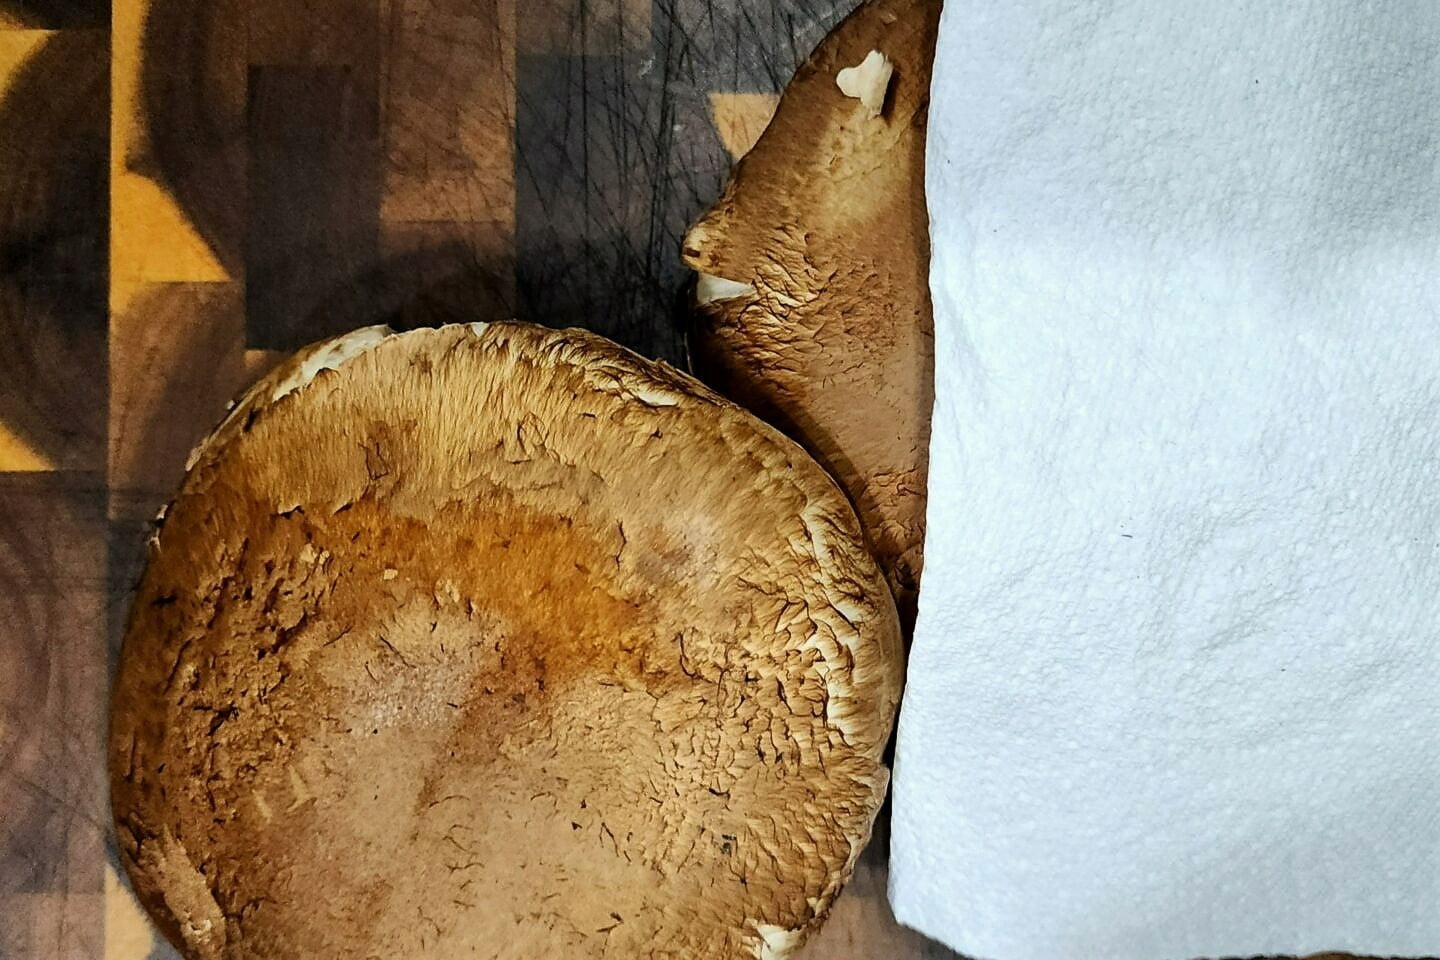 Stuffed mushroom preparation 1 1440x960 1